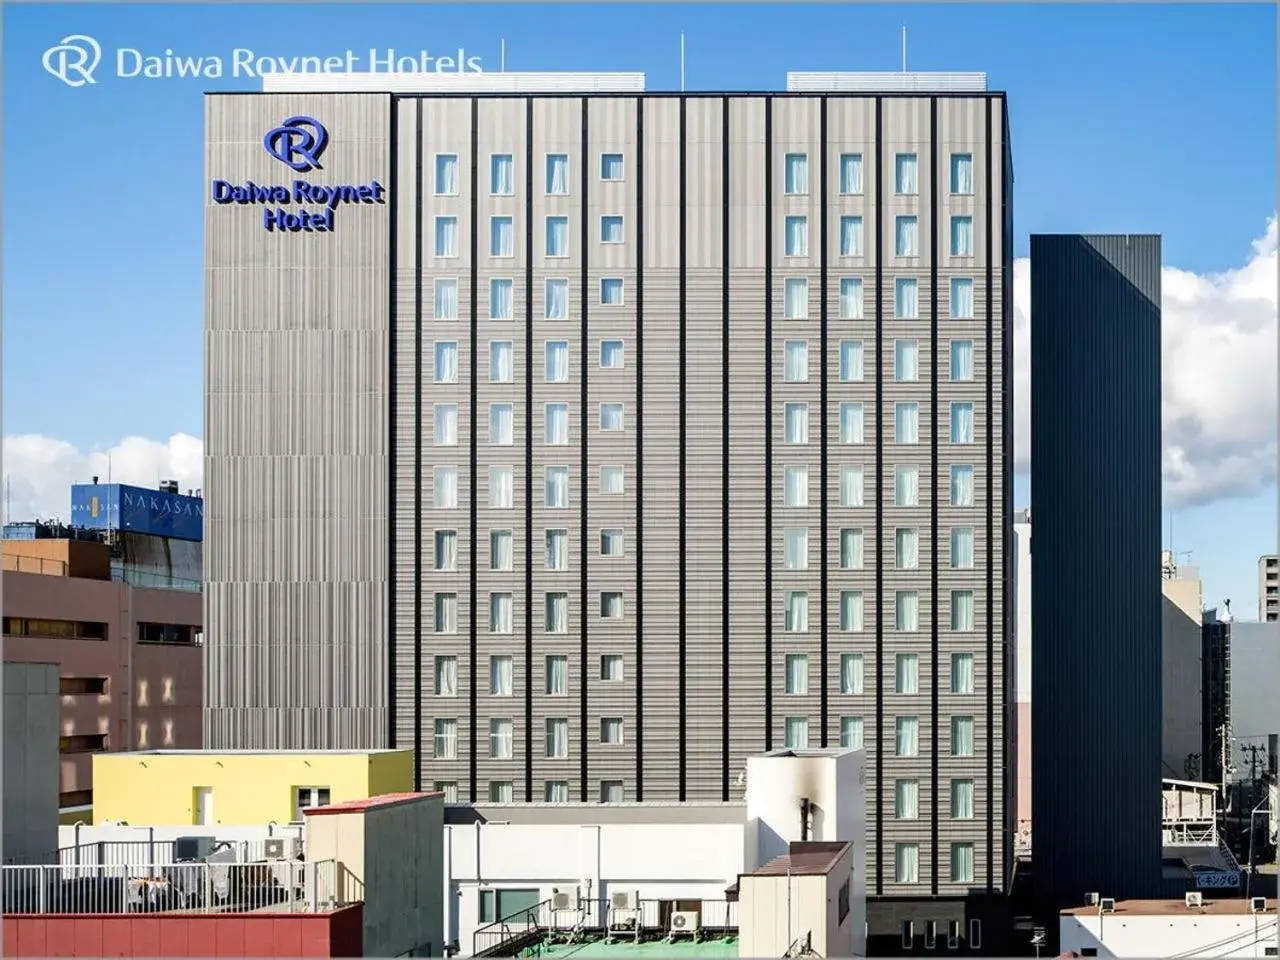 Property Building in Daiwa Roynet Hotel Aomori